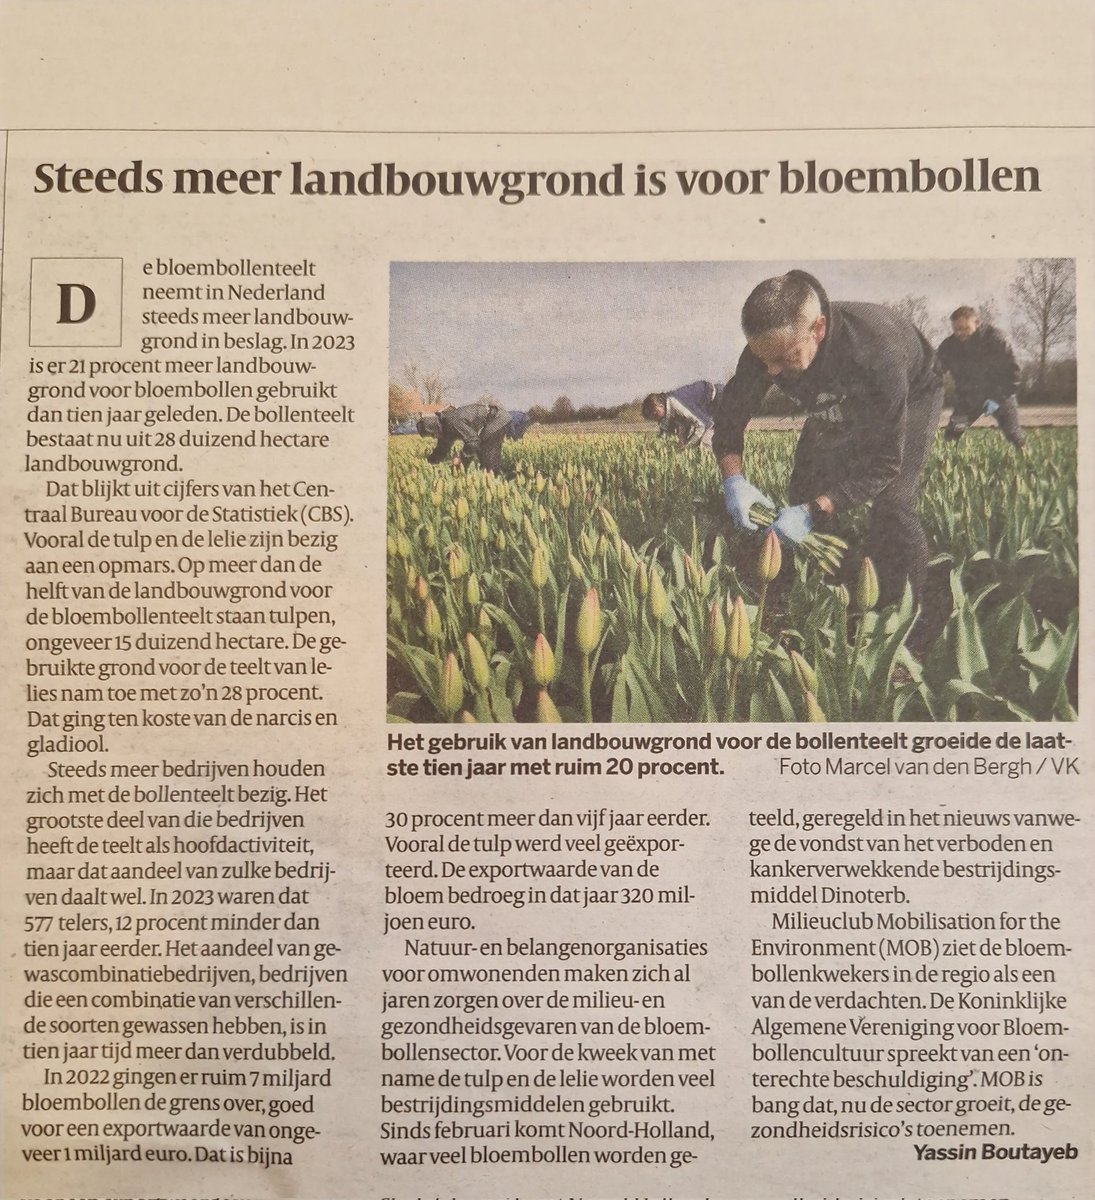 Onze voedselmakers gebruiken steeds meer landbouwgrond voor #bloembollen: de teelt met het allerhoogste gebruik van #pesticiden. Dat gaat niet alleen ten koste van voedselproductie, maar is ook ongunstig voor de natuur, het milieu en de volksgezondheid. volkskrant.nl/binnenland/mee…